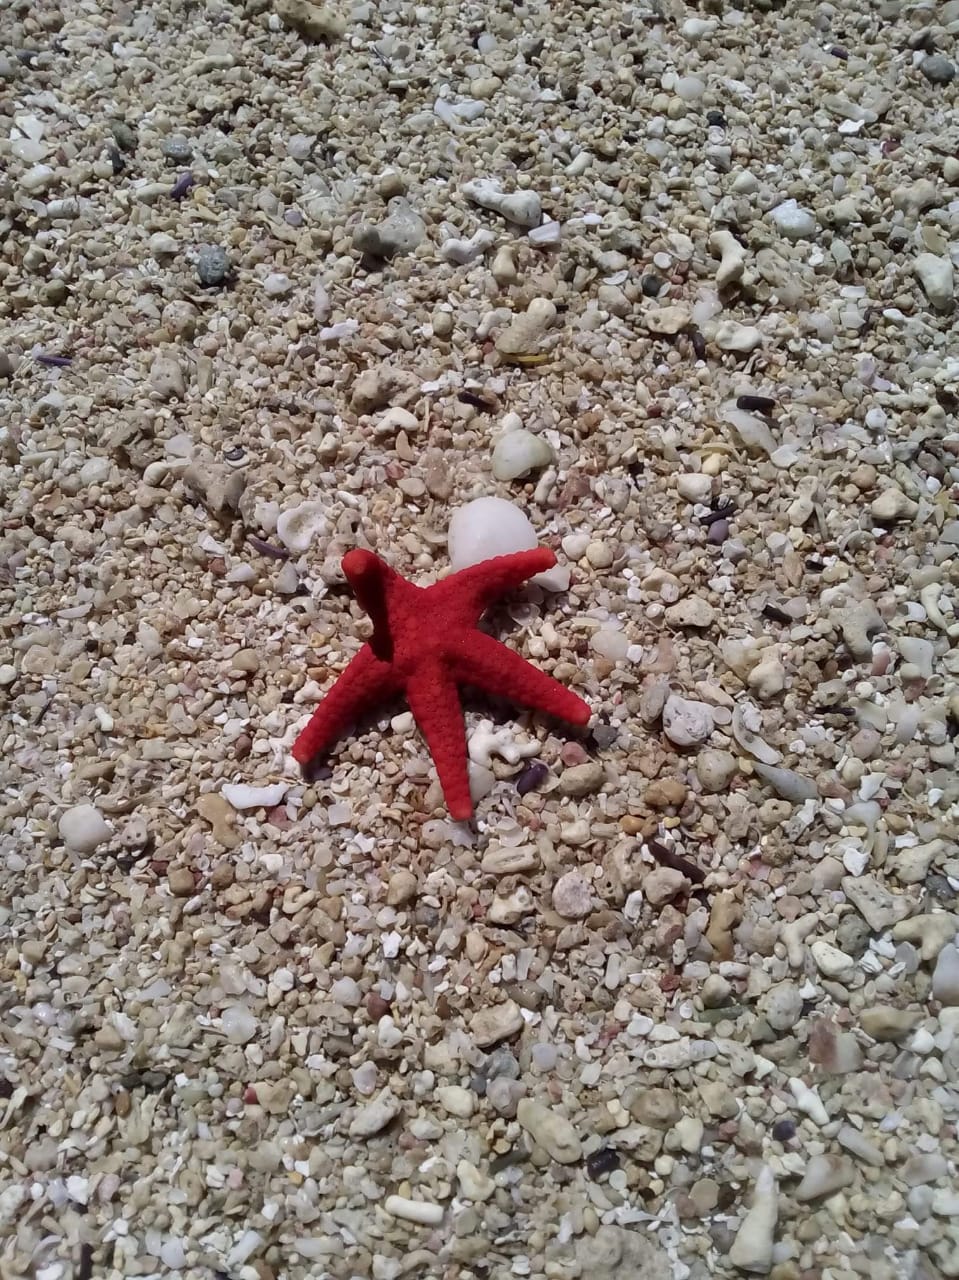 Red starfish on sandy beach, Mauritius.